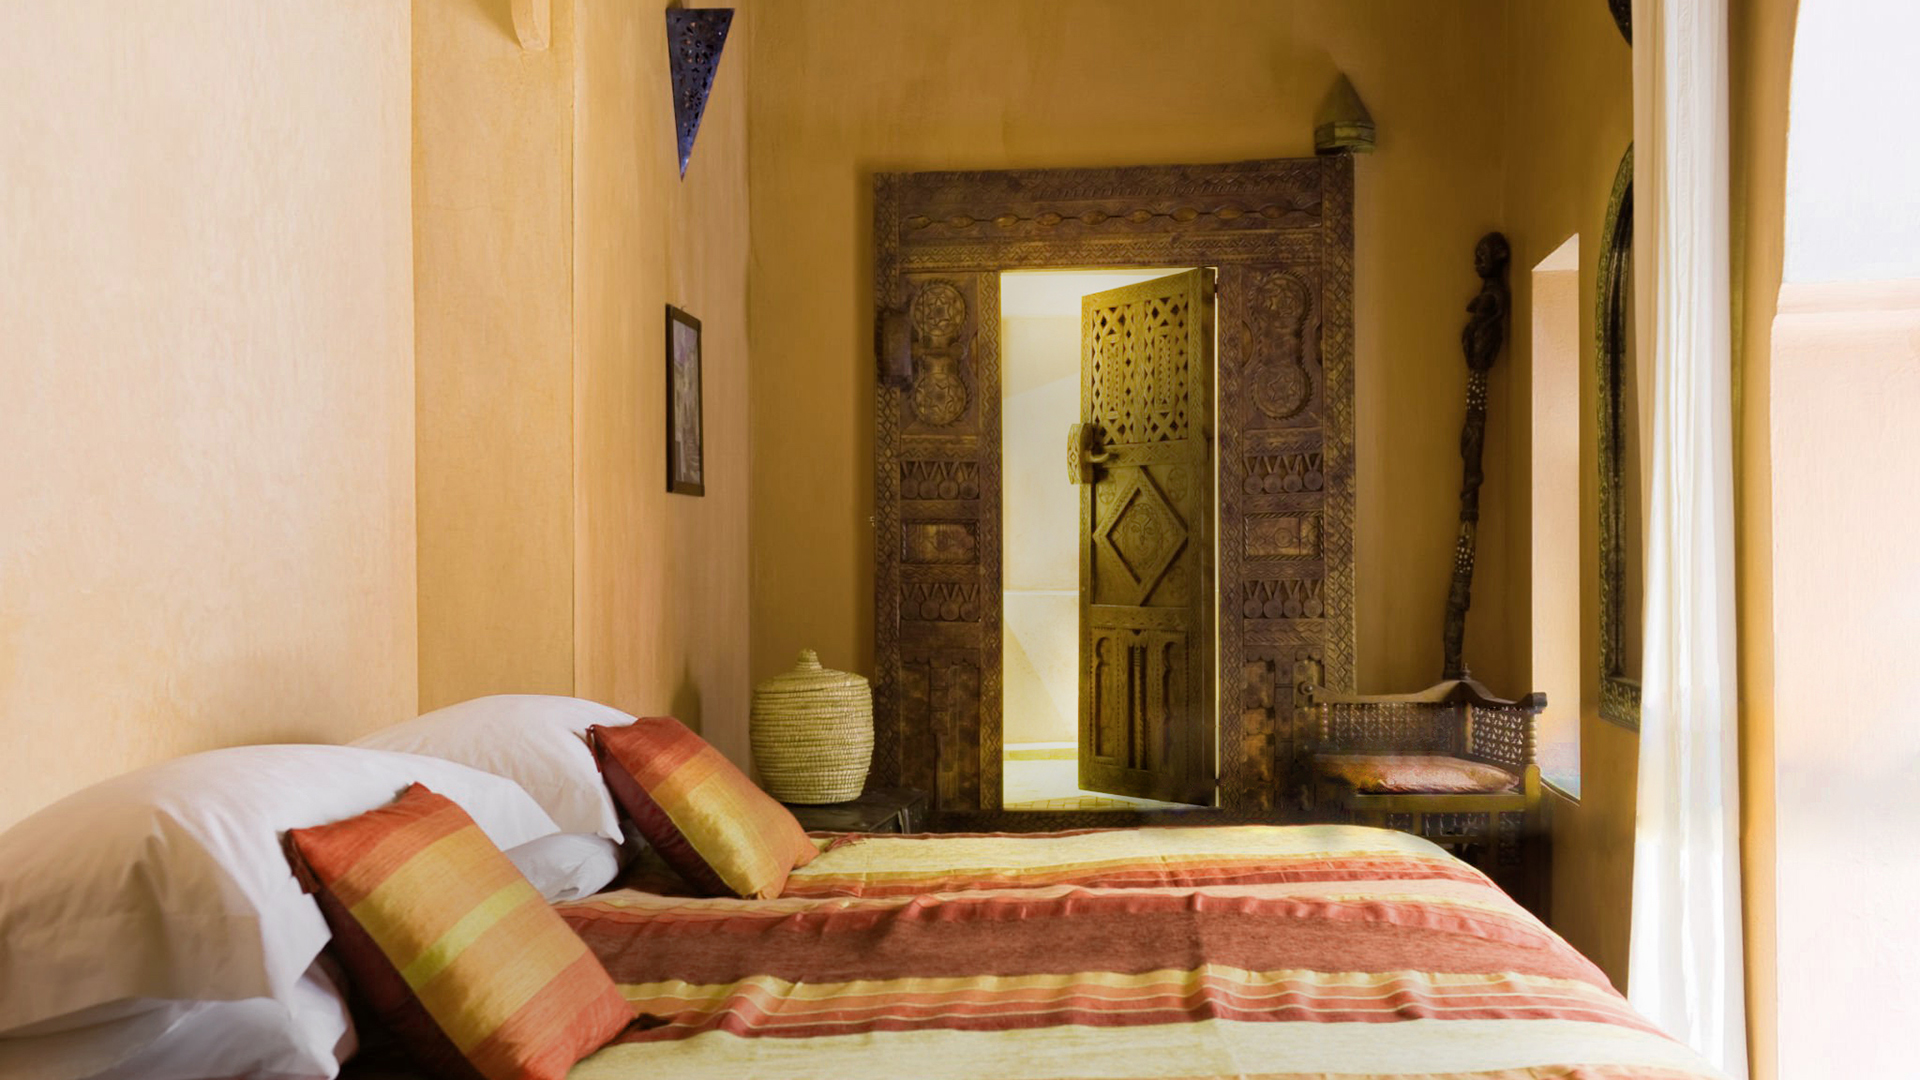 Schlafzimmer im arabischen Stil mit Tadelakt an den Wänden